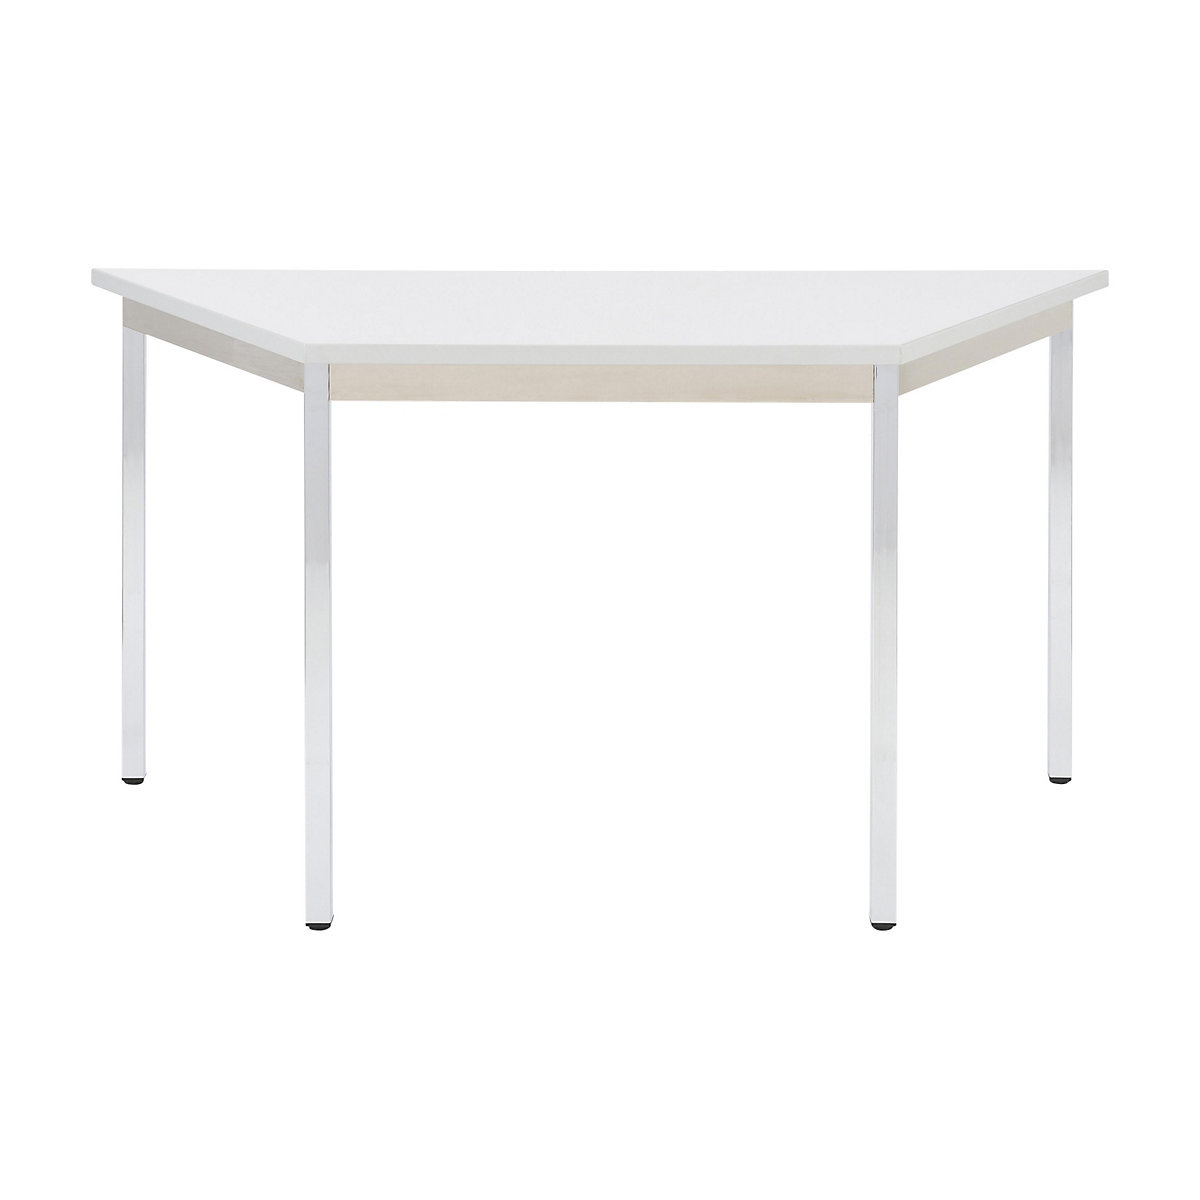 Universele tafel – eurokraft basic, trapeziumvormig, h x b x d = 740 x 1200 x 600 mm, blad lichtgrijs, frame verchroomd